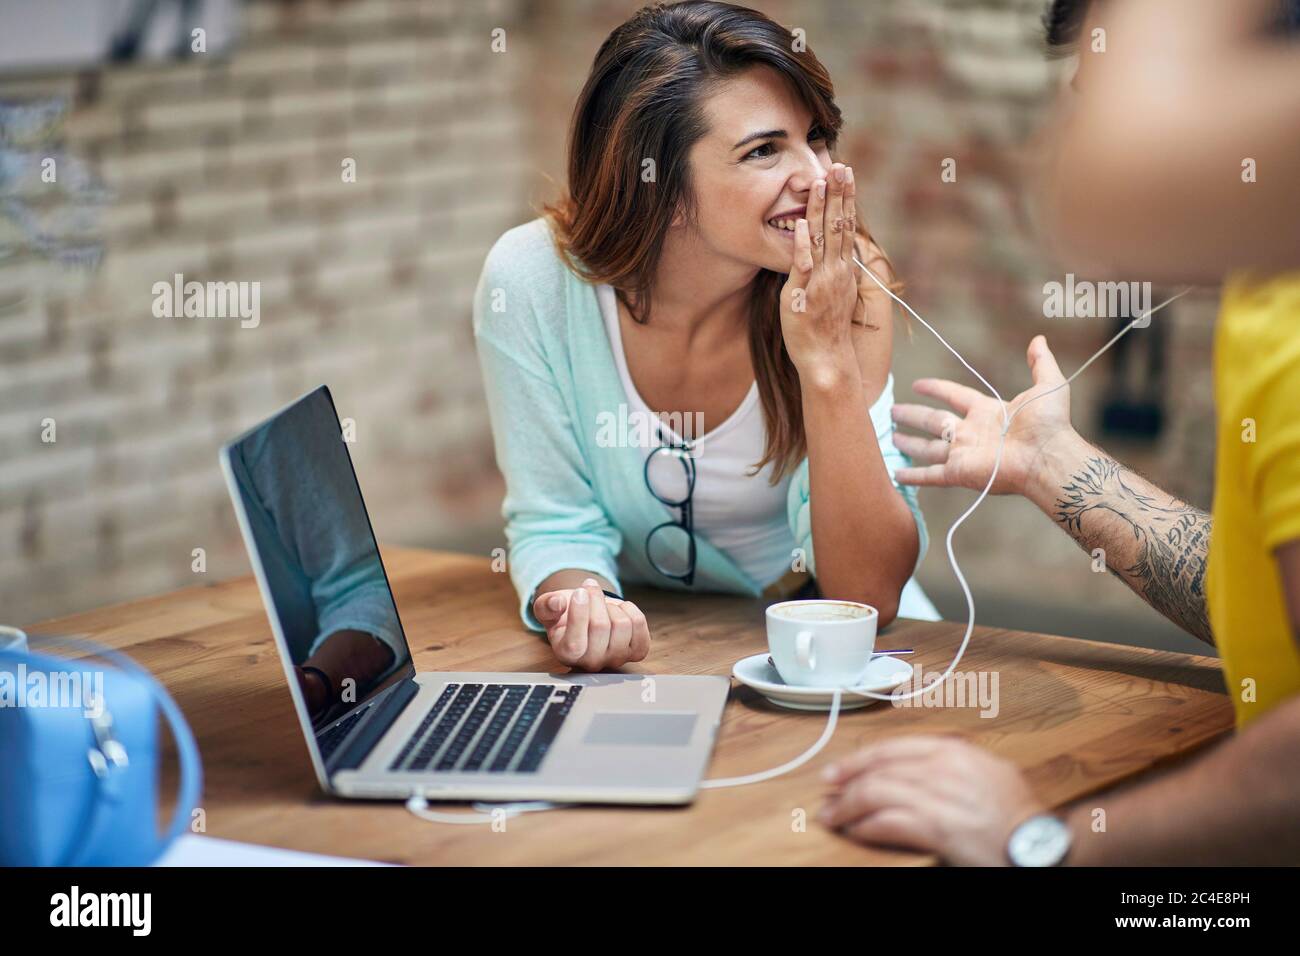 Junge kaukasische Frau, die mit der Hand über dem Mund lachend und dem männlichen Partner zuhört Stockfoto